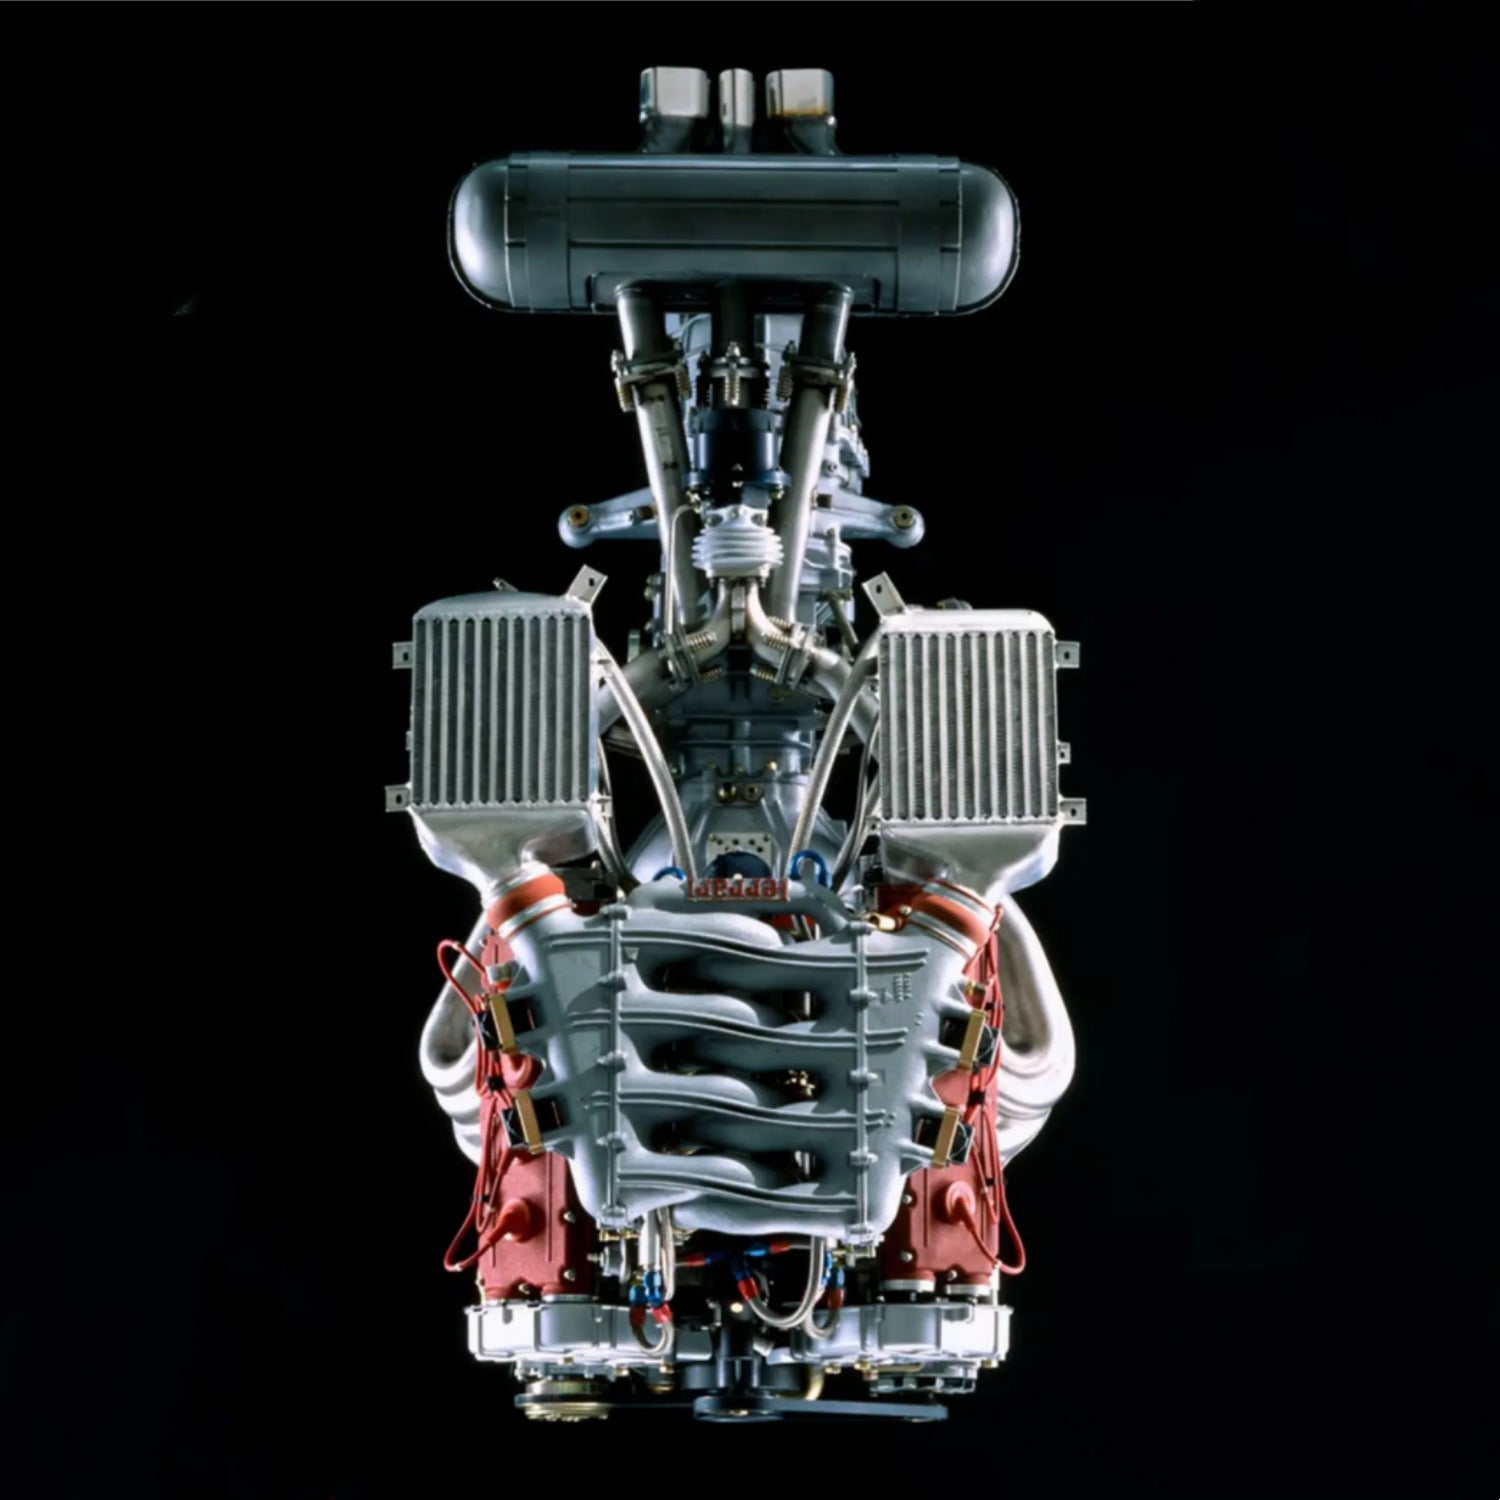 1/64 Ferrari F40 Engine Components